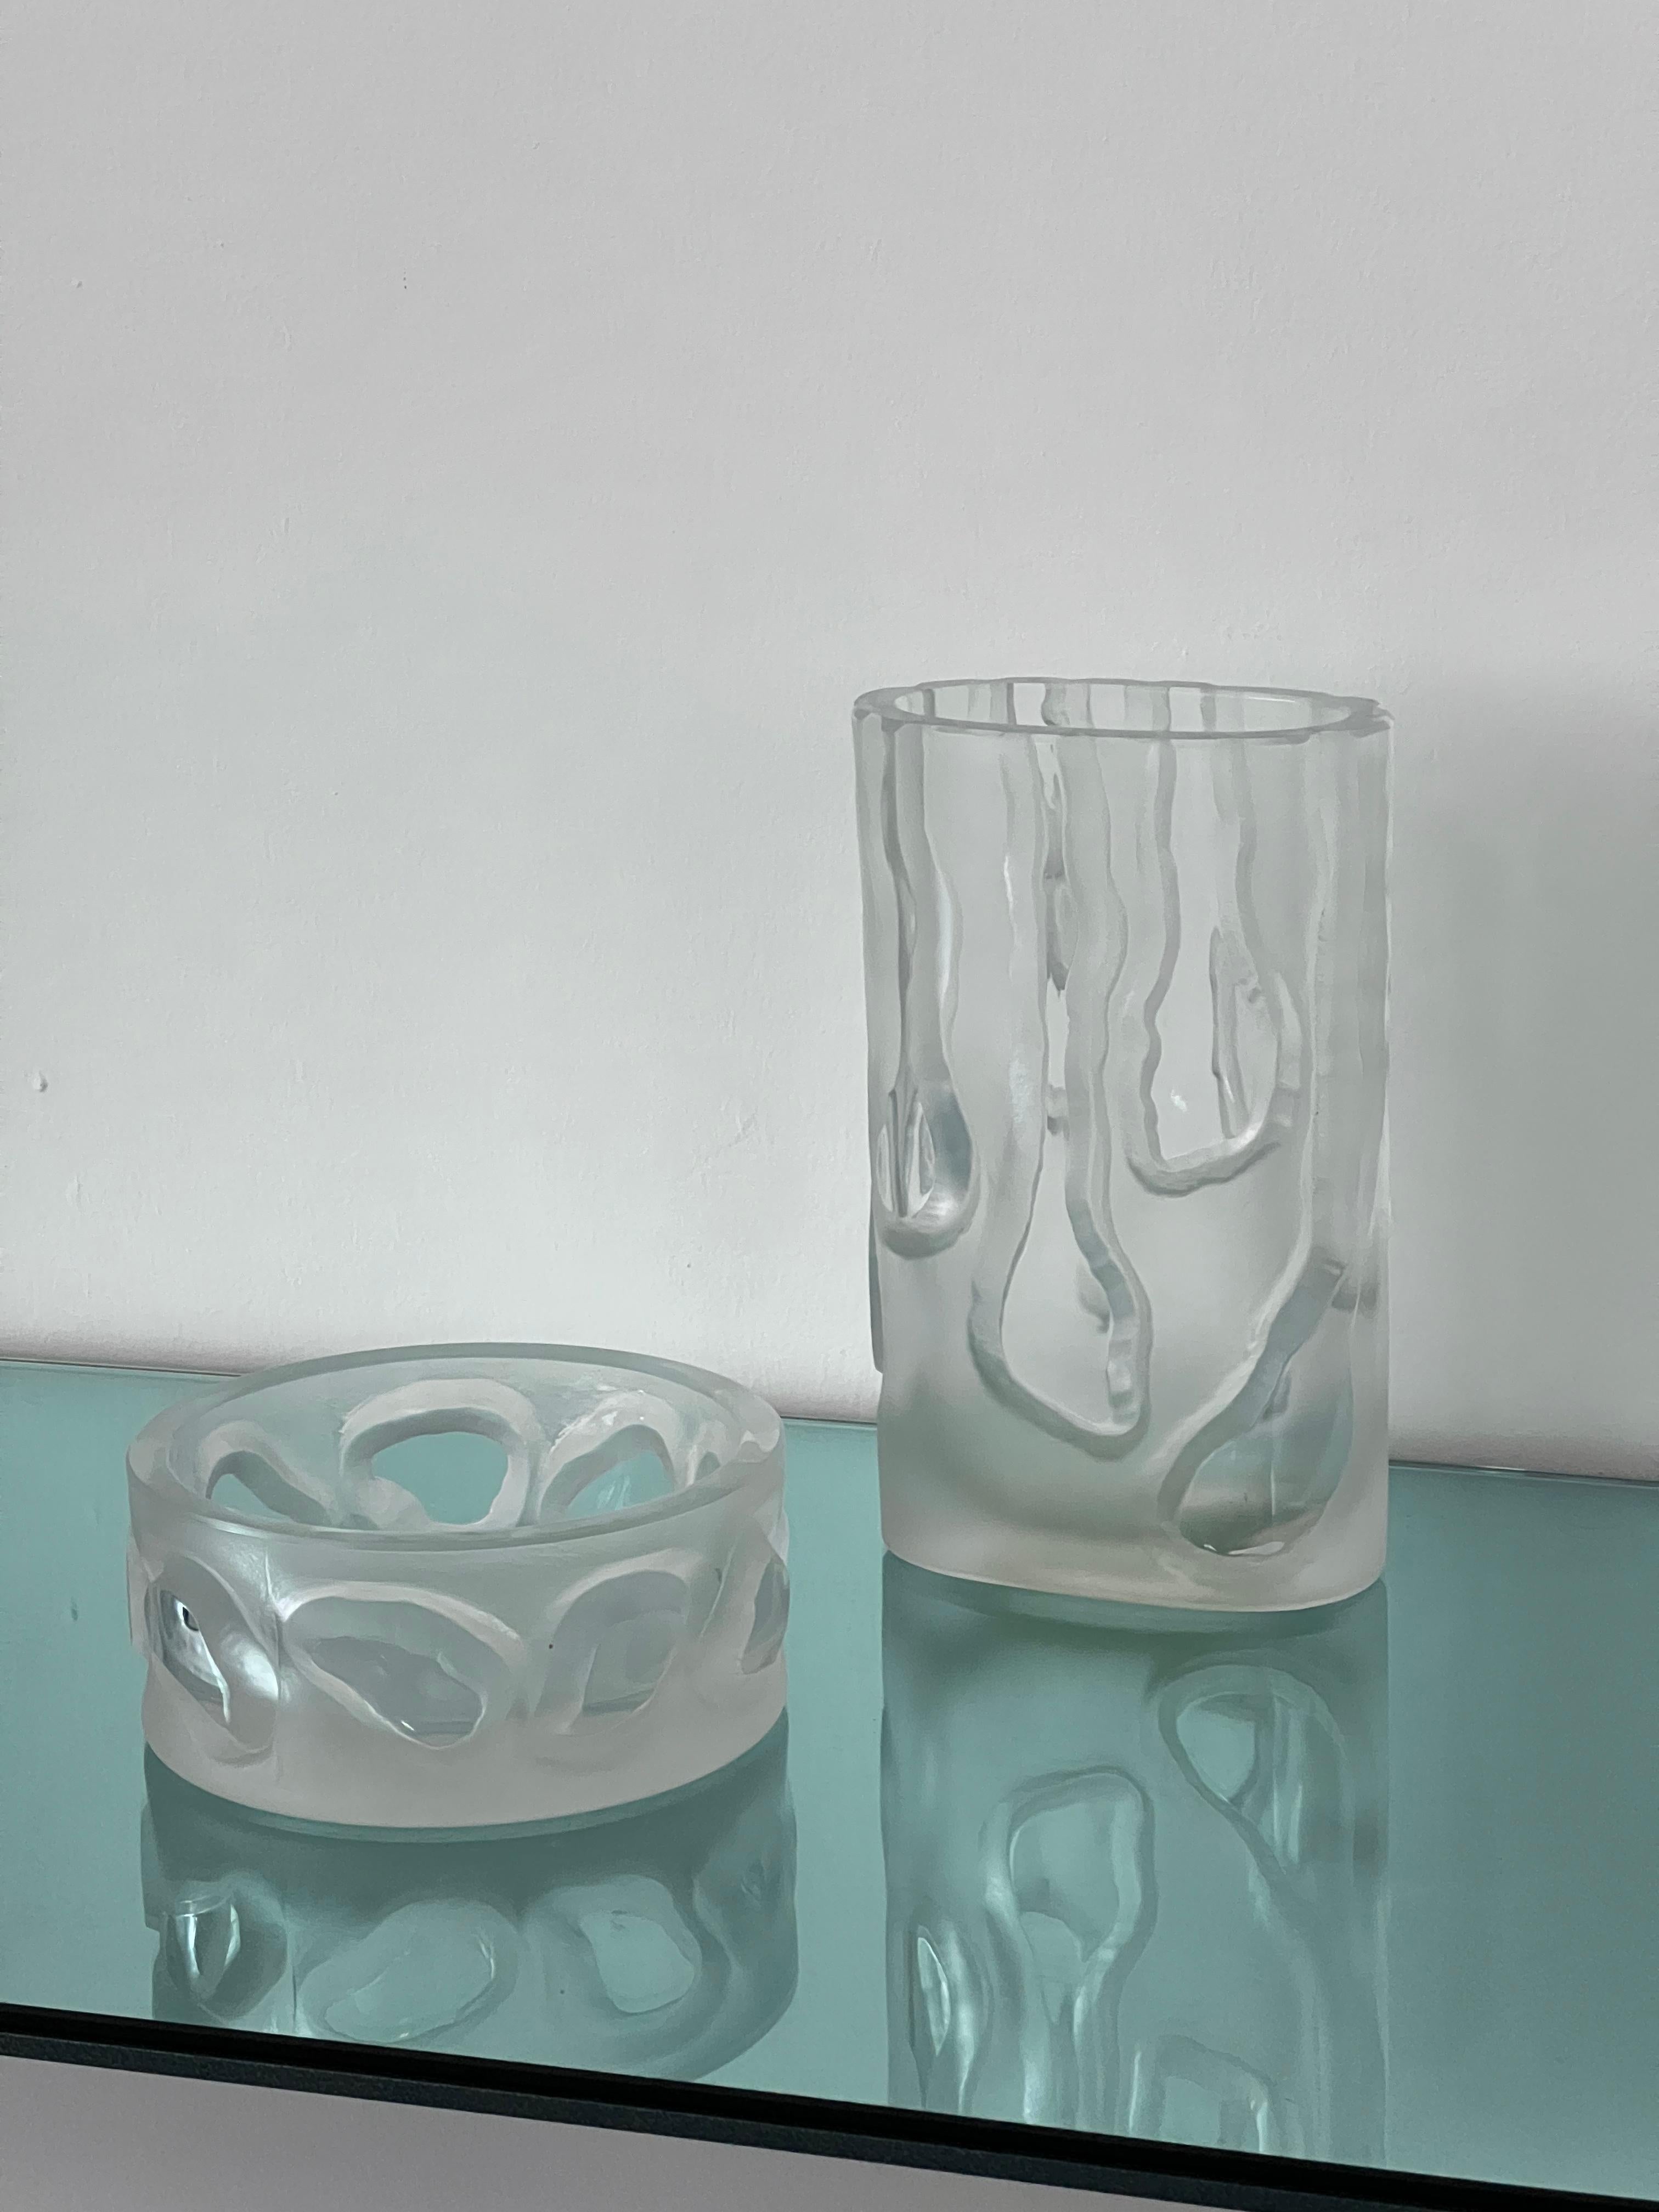 Vintage-Set aus zwei zusammenpassenden Gläsern, einer hohen Vase und einer niedrigen Schale, beide aus demselben Farbton von klarem Glas, beide mit mattierter/sandgestrahlter Oberfläche und eingravierten Verzierungen, die die glatte Oberfläche des